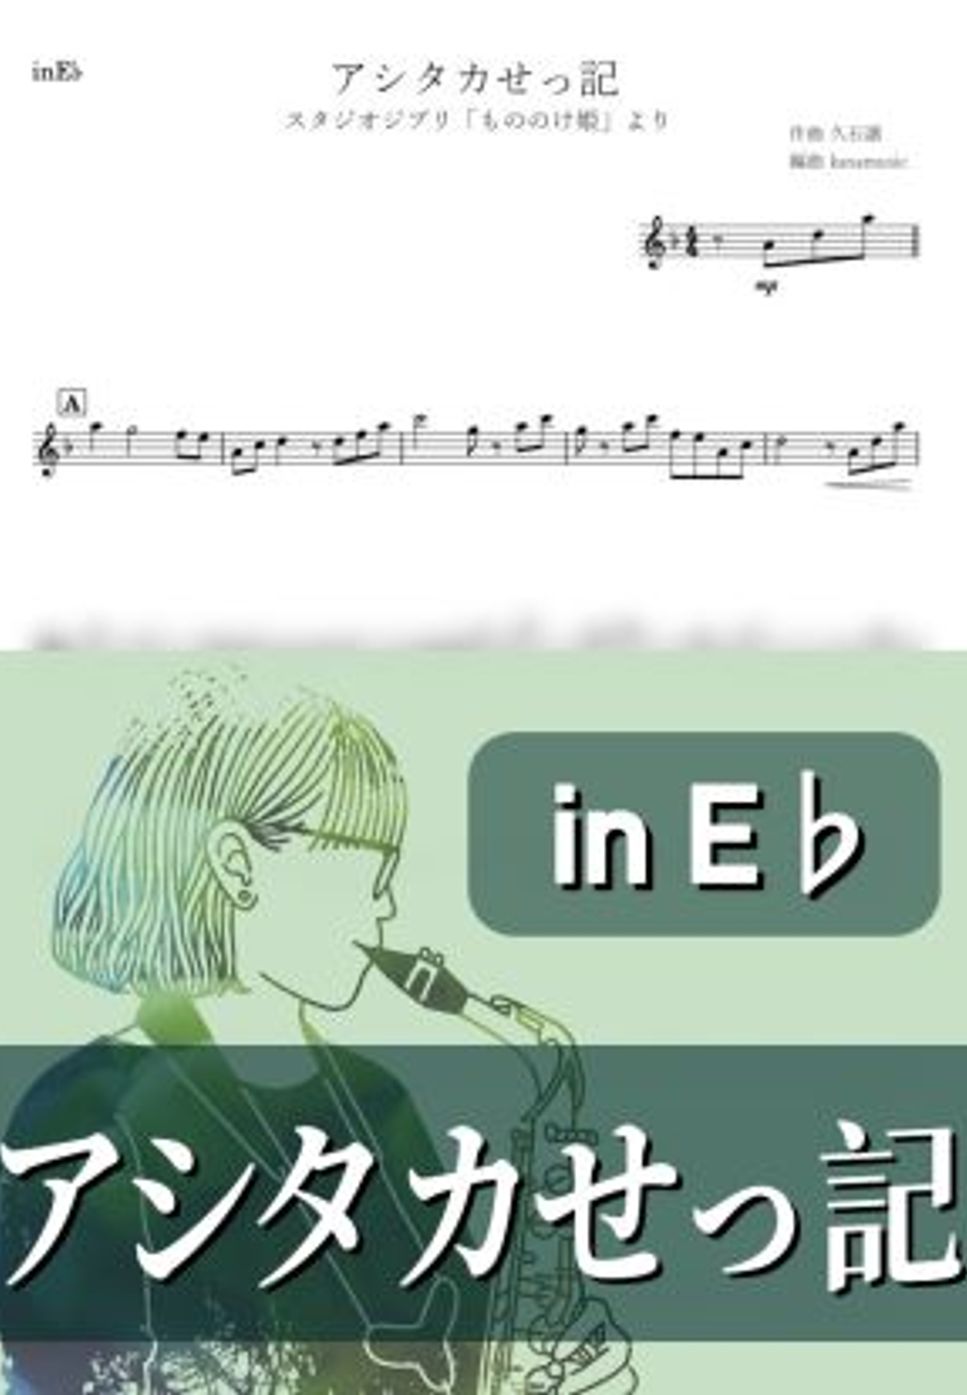 もののけ姫 - アシタカせっ記 (E♭) by kanamusic